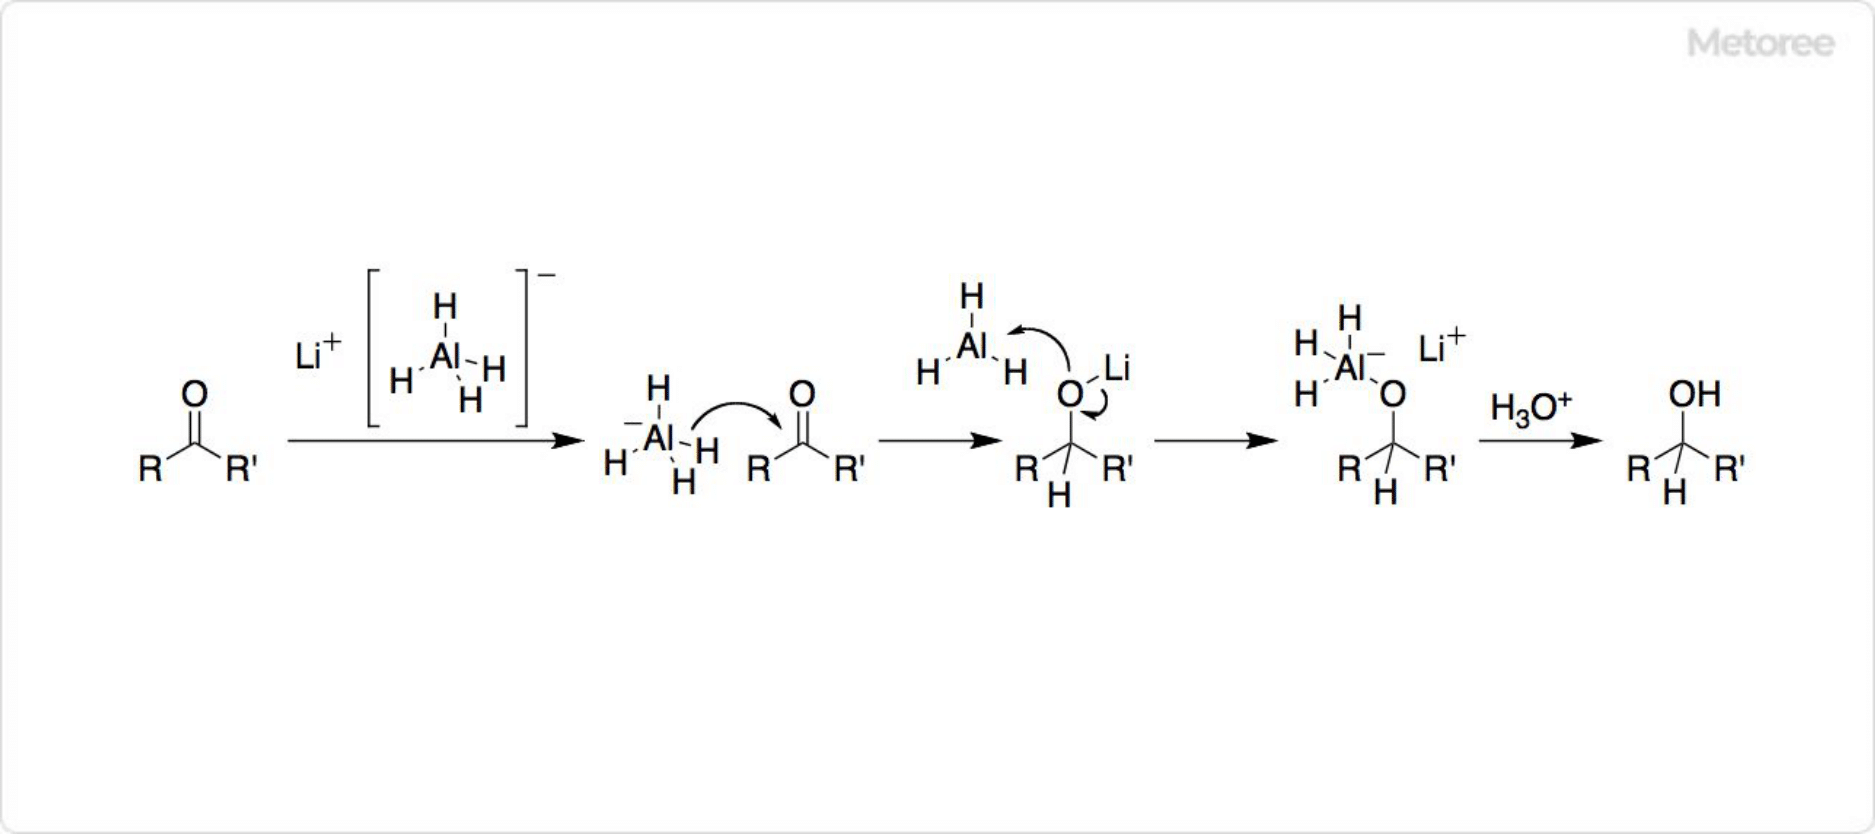 水素化アルミニウムリチウムの反応機構